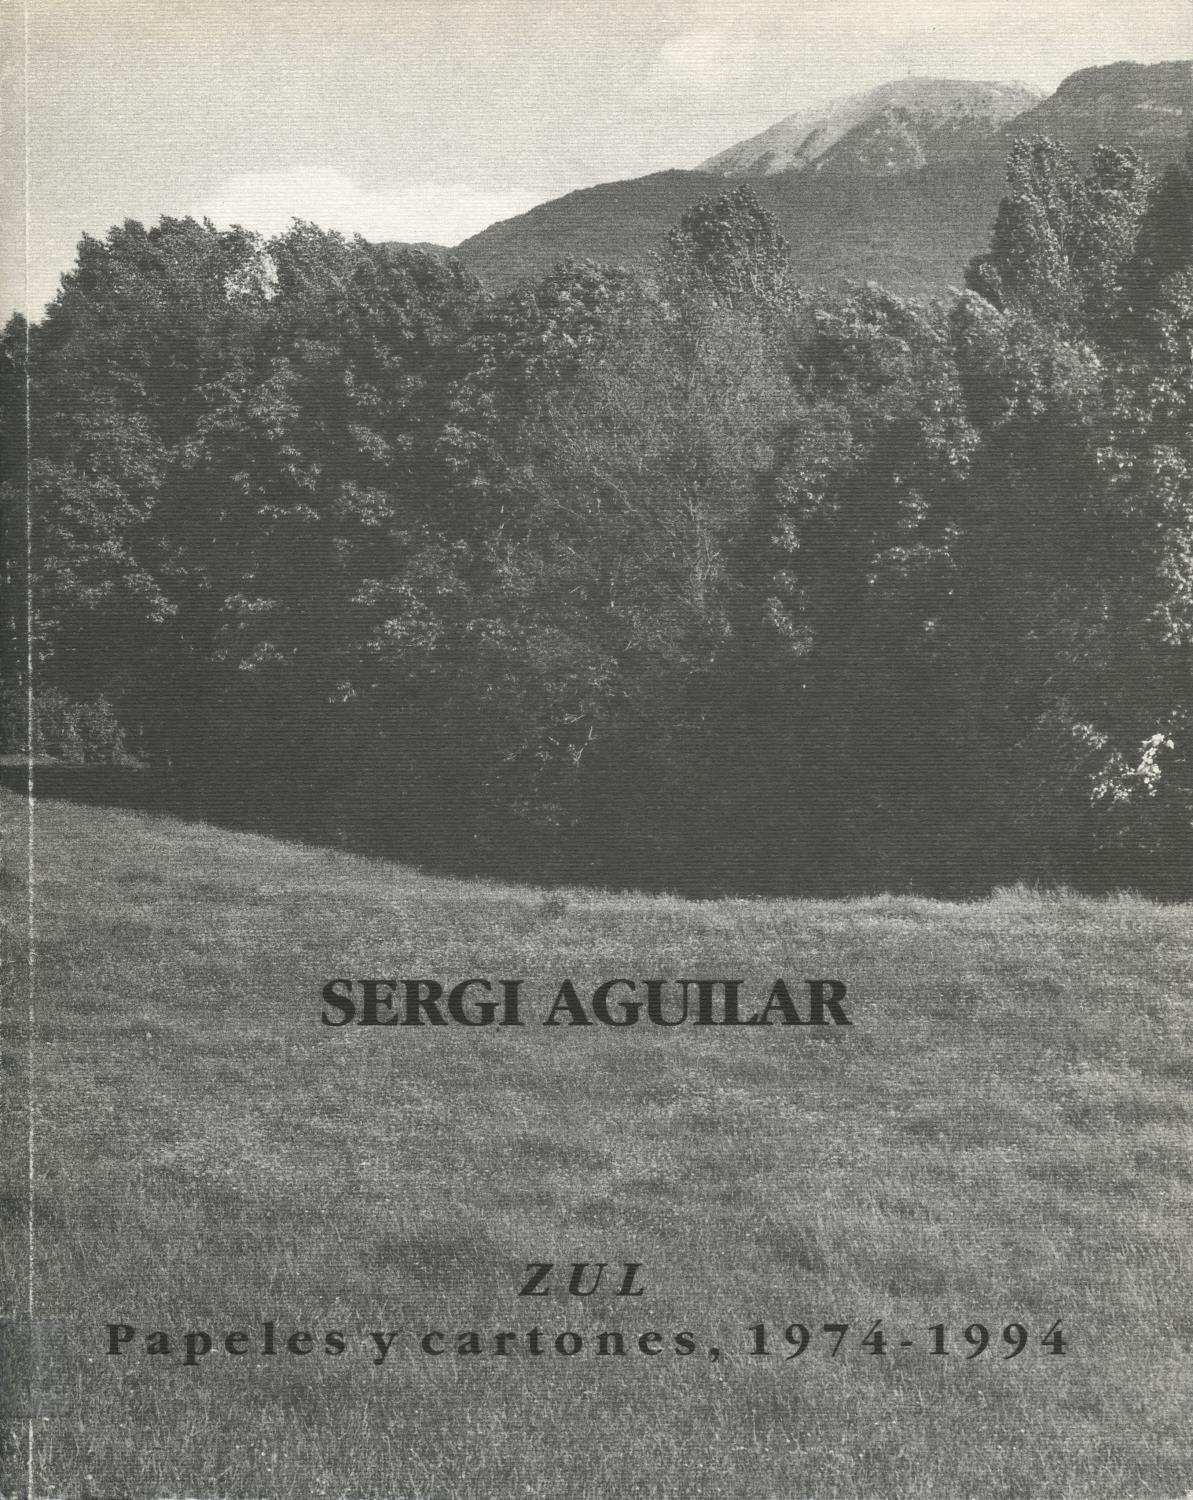 Sergi Aguilar. Zul, Papeles y Cartones, 1974 – 1994